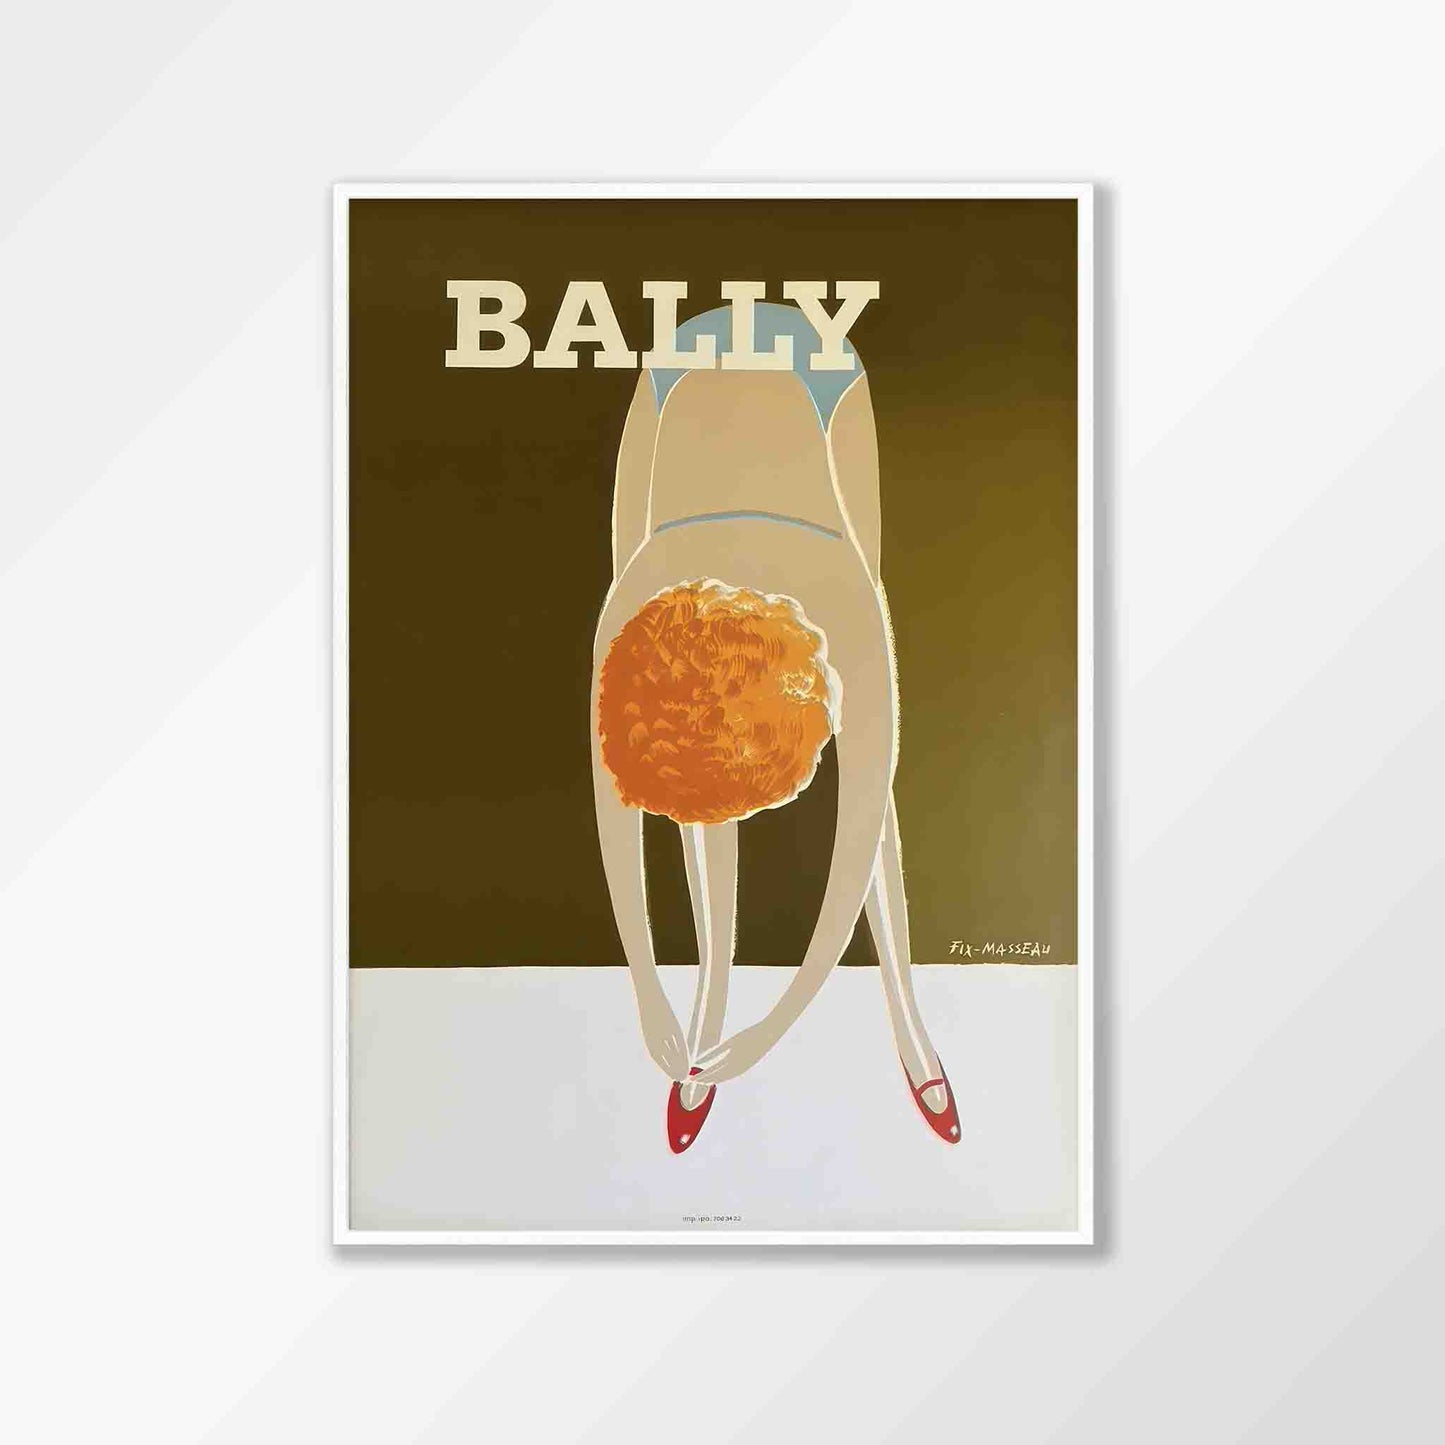 Bally Shoes Fix by Bernard Villemot